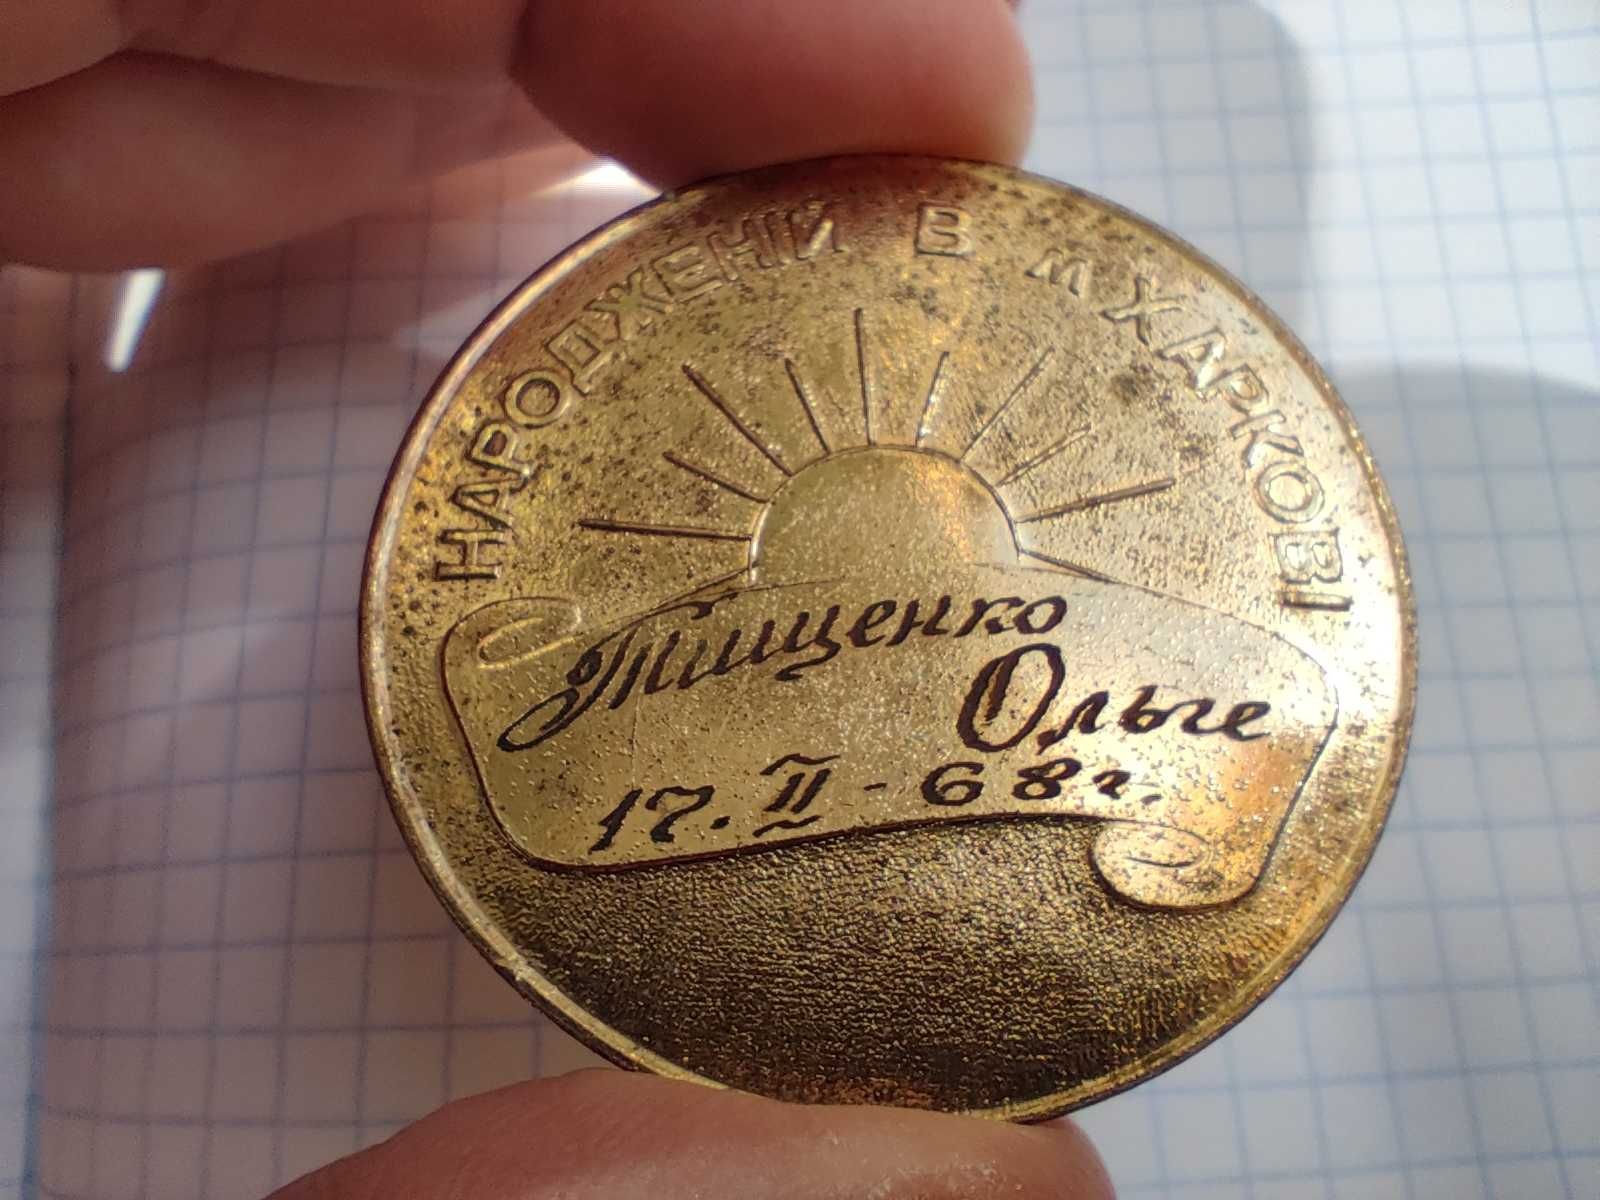 Памятная медаль "Народженому в Харкові", 1968 г, бронза/золочение